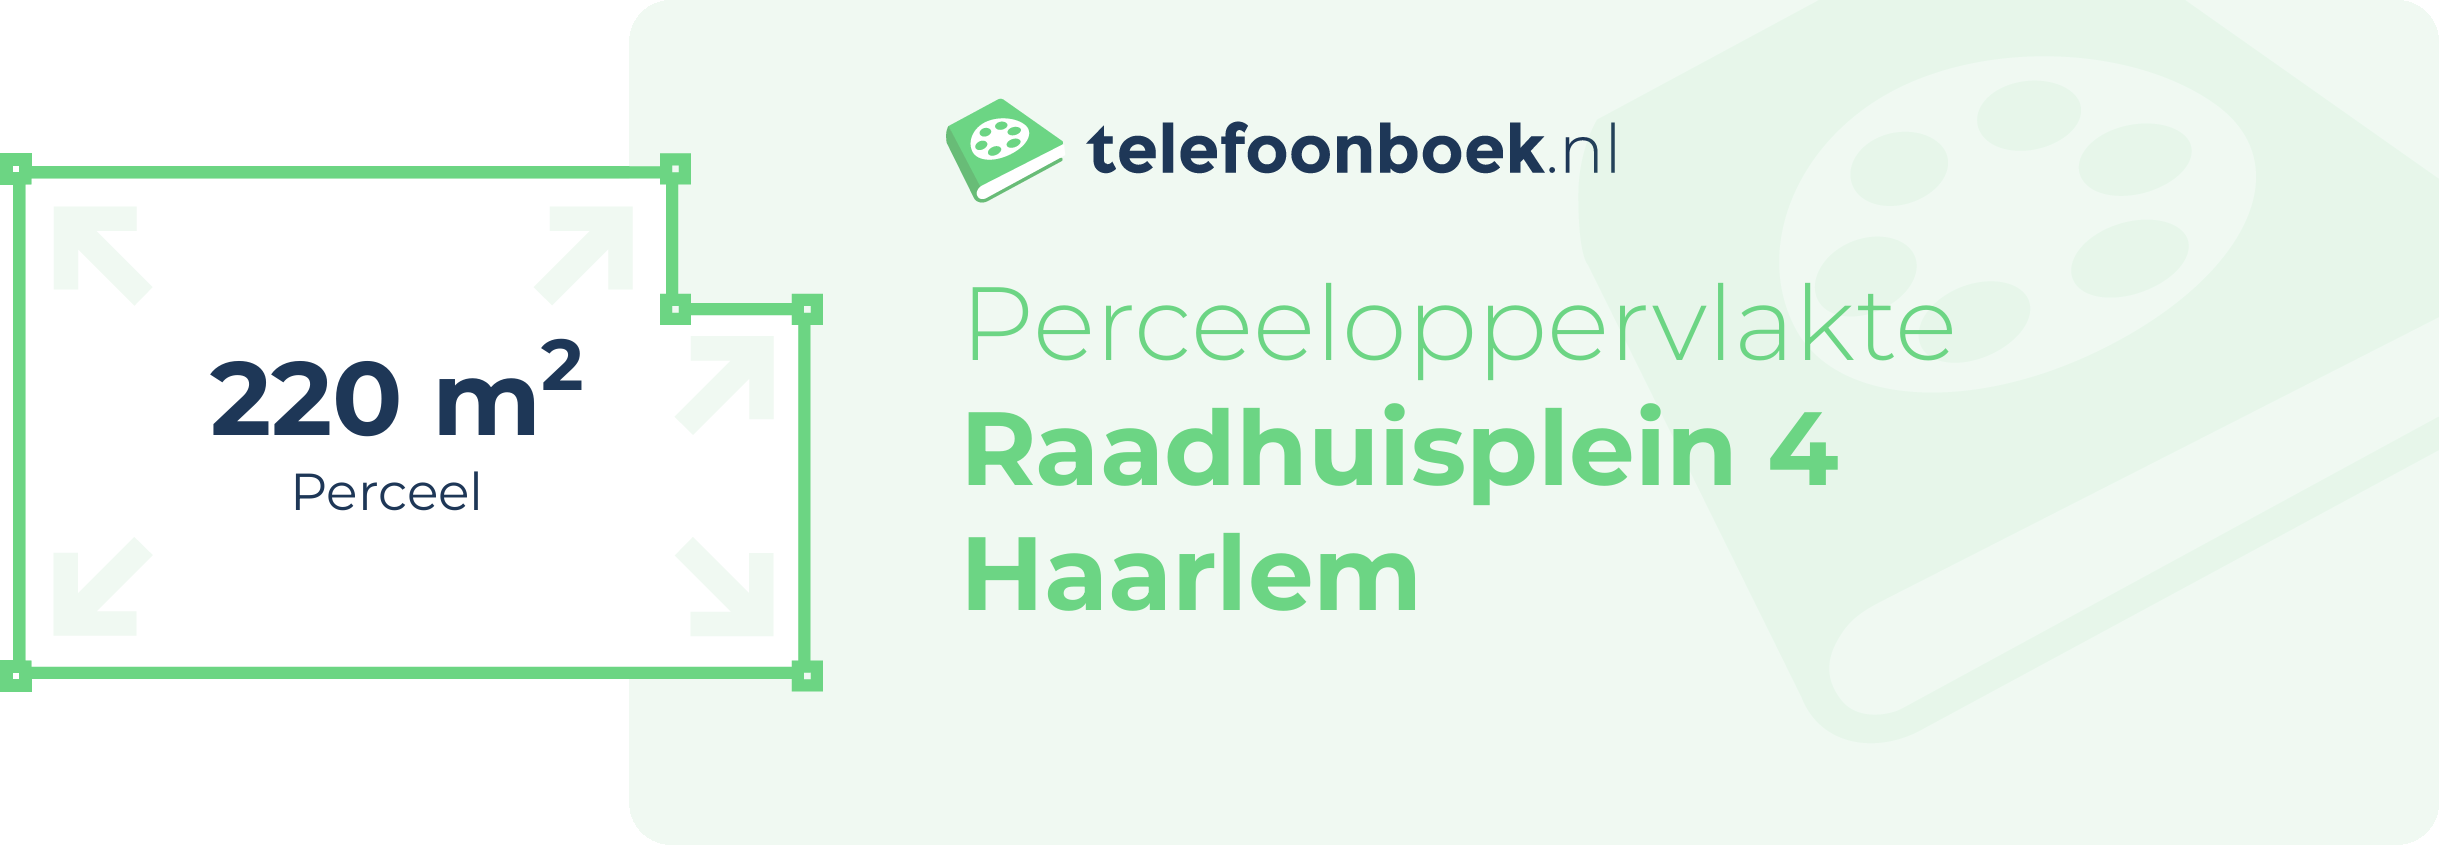 Perceeloppervlakte Raadhuisplein 4 Haarlem